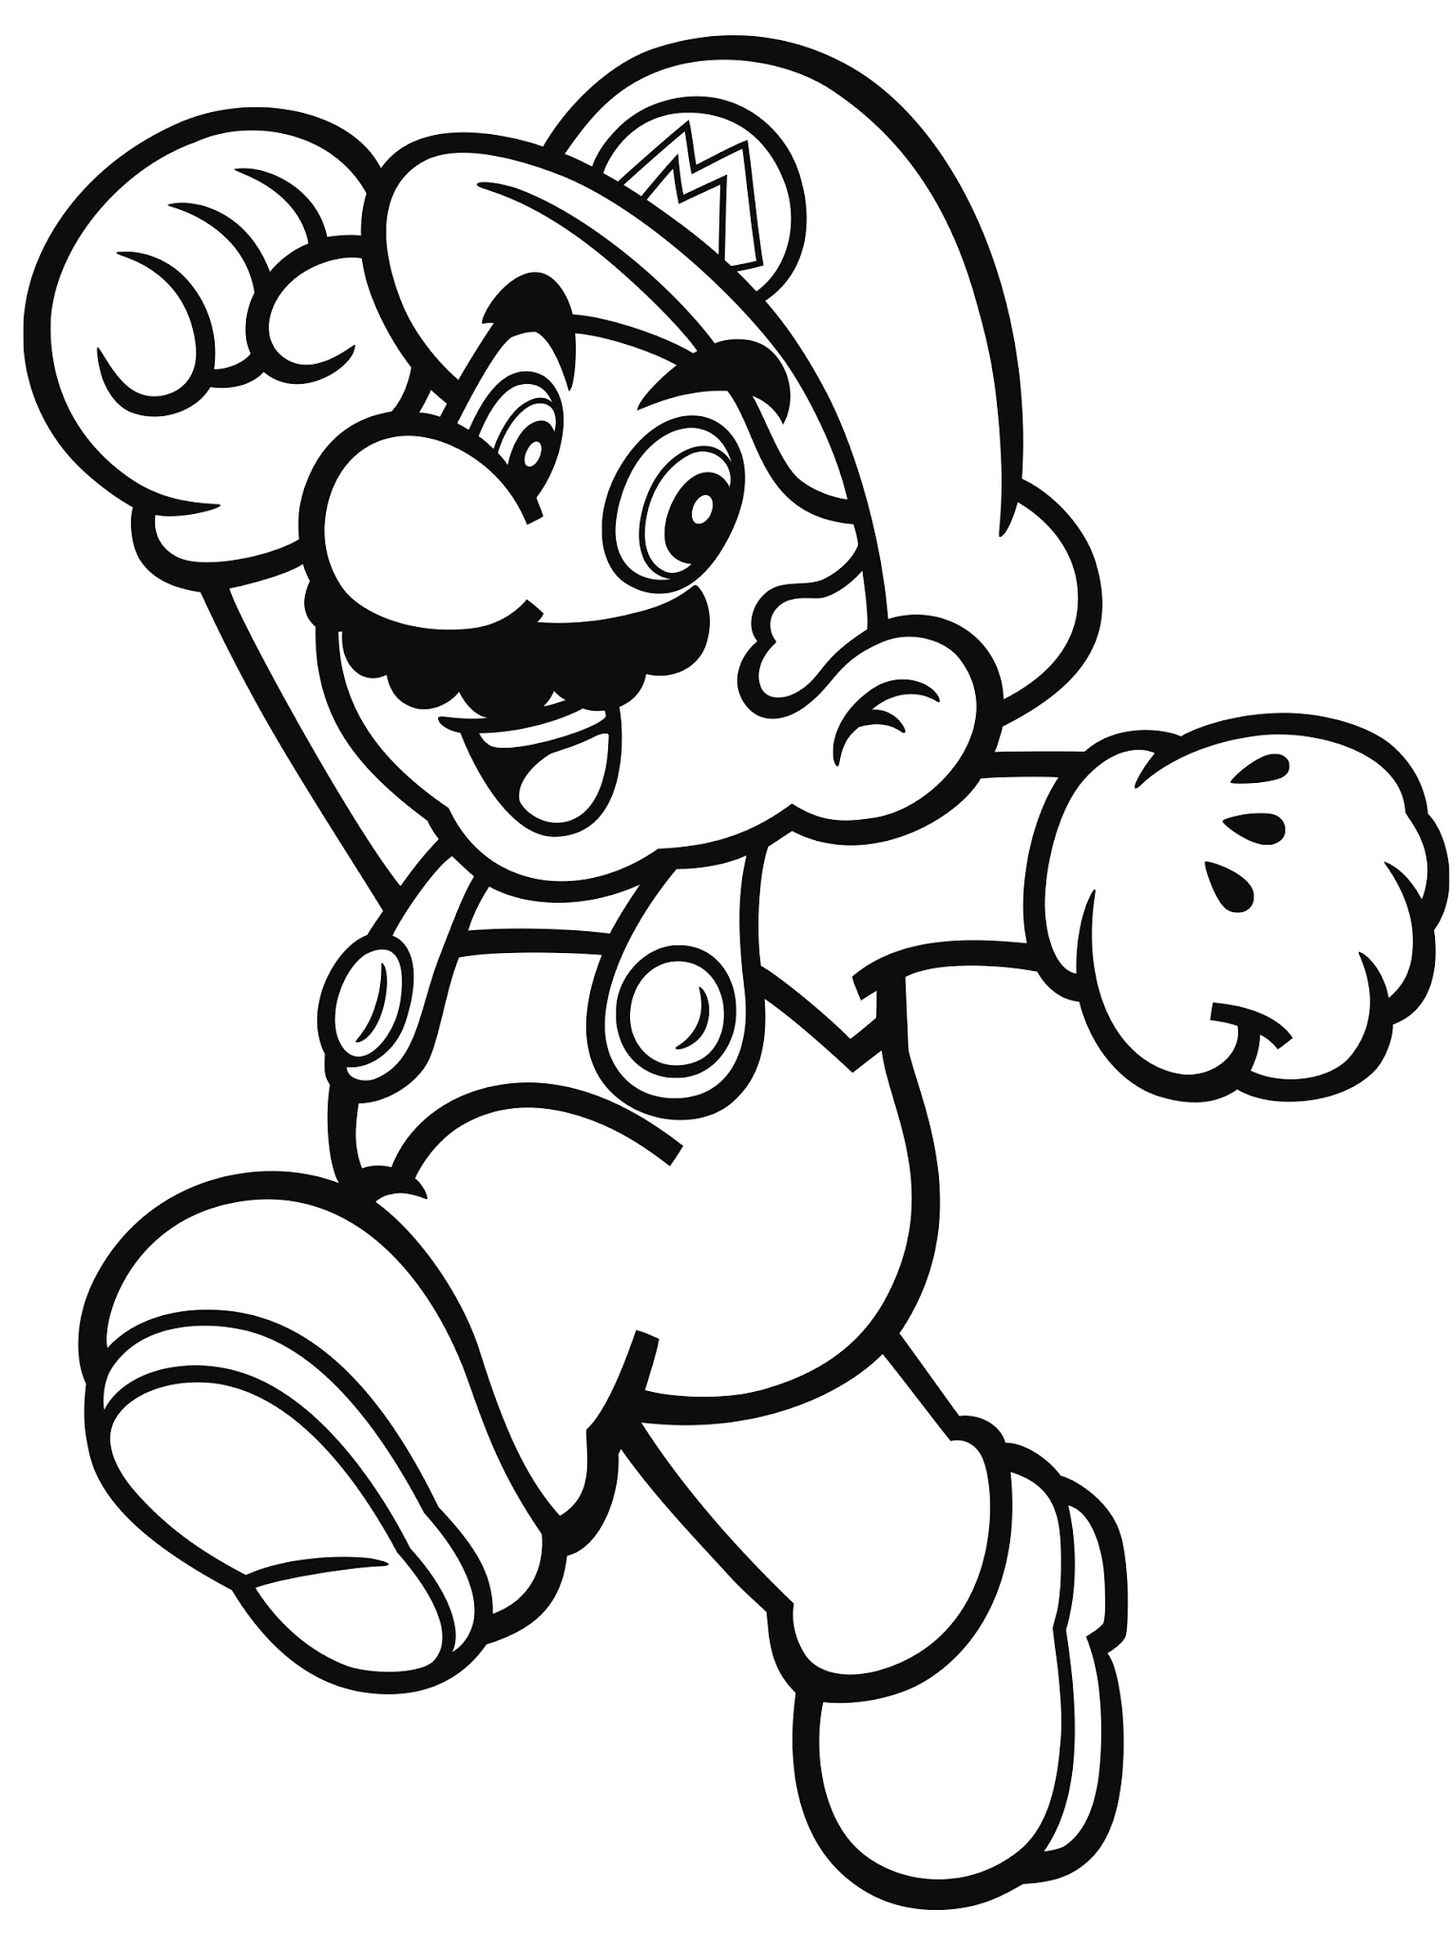 Desenhos de Super Mario para colorir, jogos de pintar e imprimir